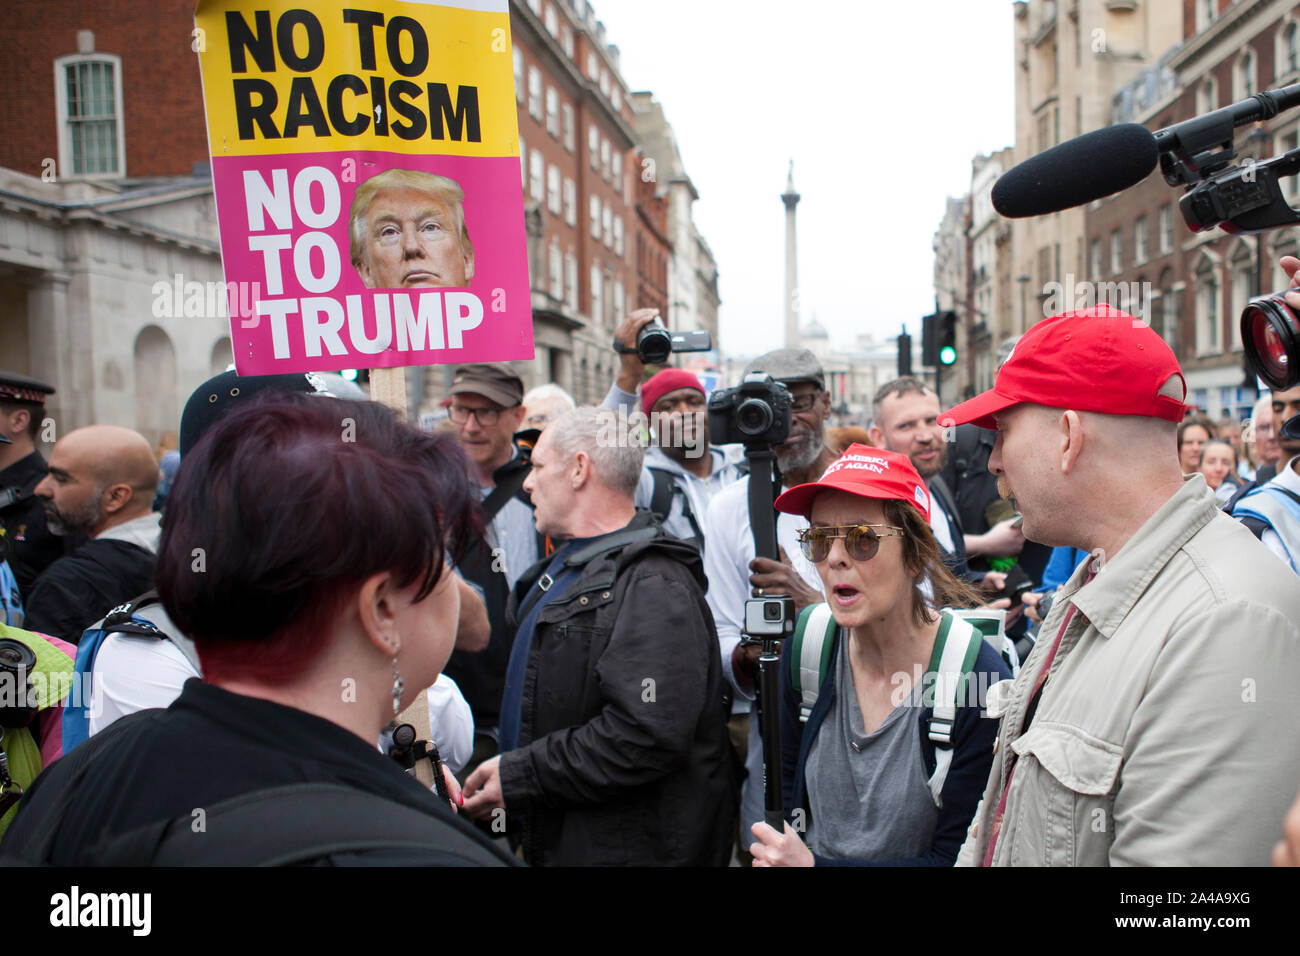 Les partisans d'Atout Pro affronter partisans anti Trump dans Whitehall London 2019 Banque D'Images